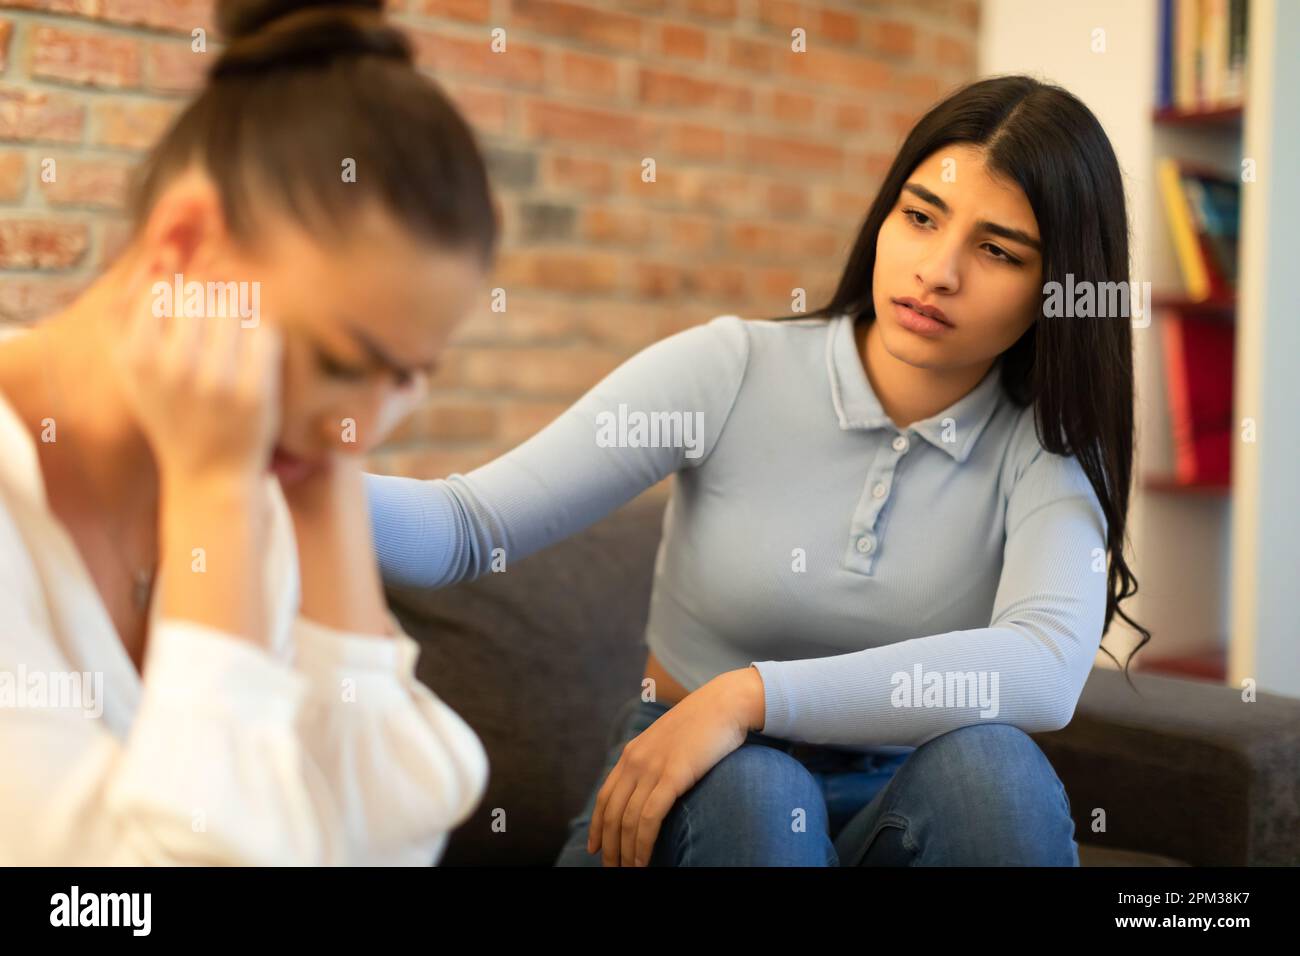 Signora spagnola che sostiene e calmando la sua amica che ha problemi, seduta sul divano e parlando Foto Stock